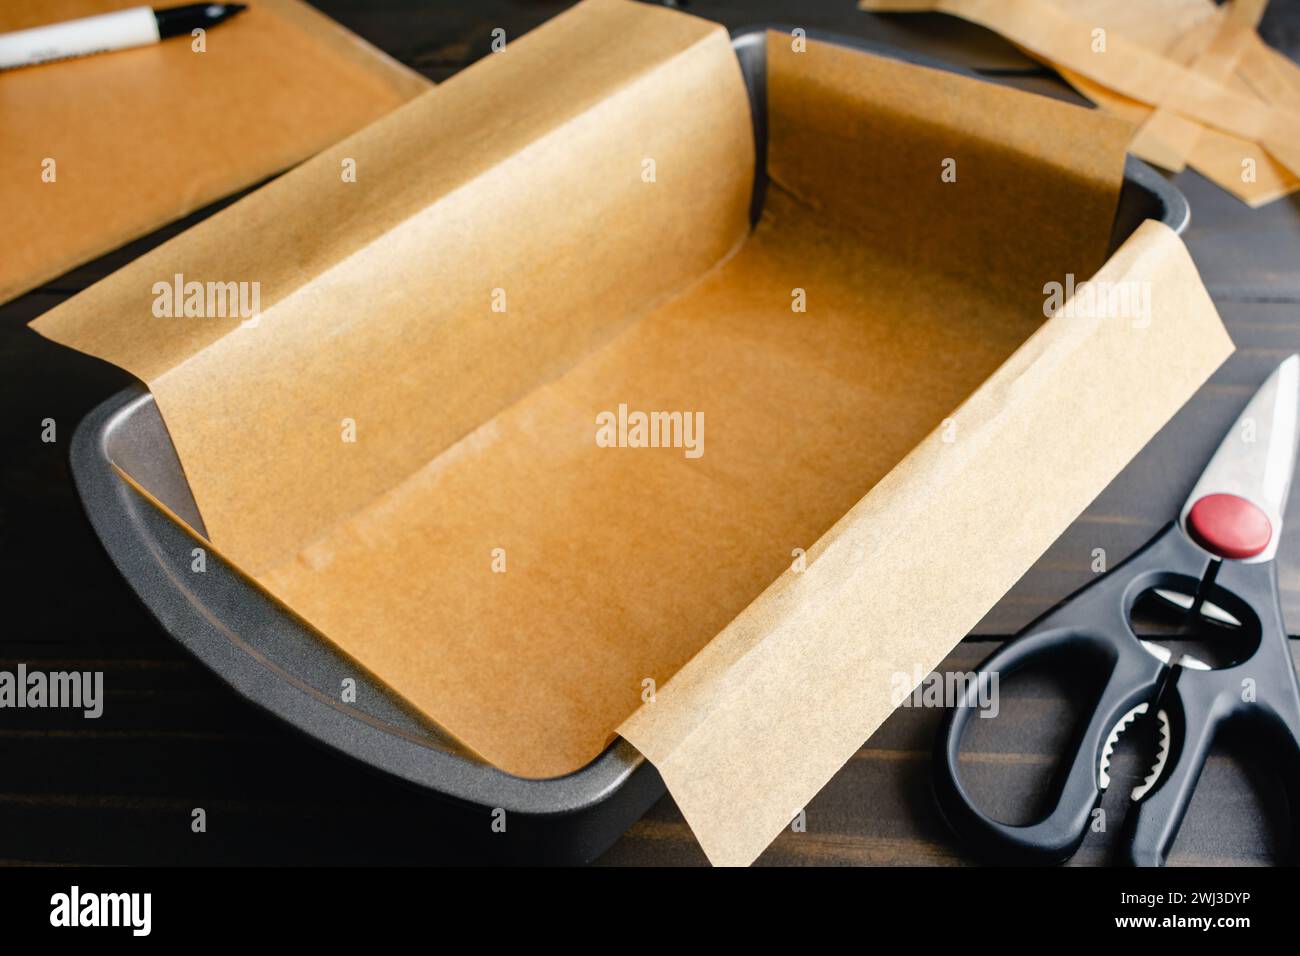 Moule à pain garni de papier parchemin non blanchi : moule à pain garni de papier sulfurisé avec des ciseaux et un marqueur en arrière-plan Banque D'Images